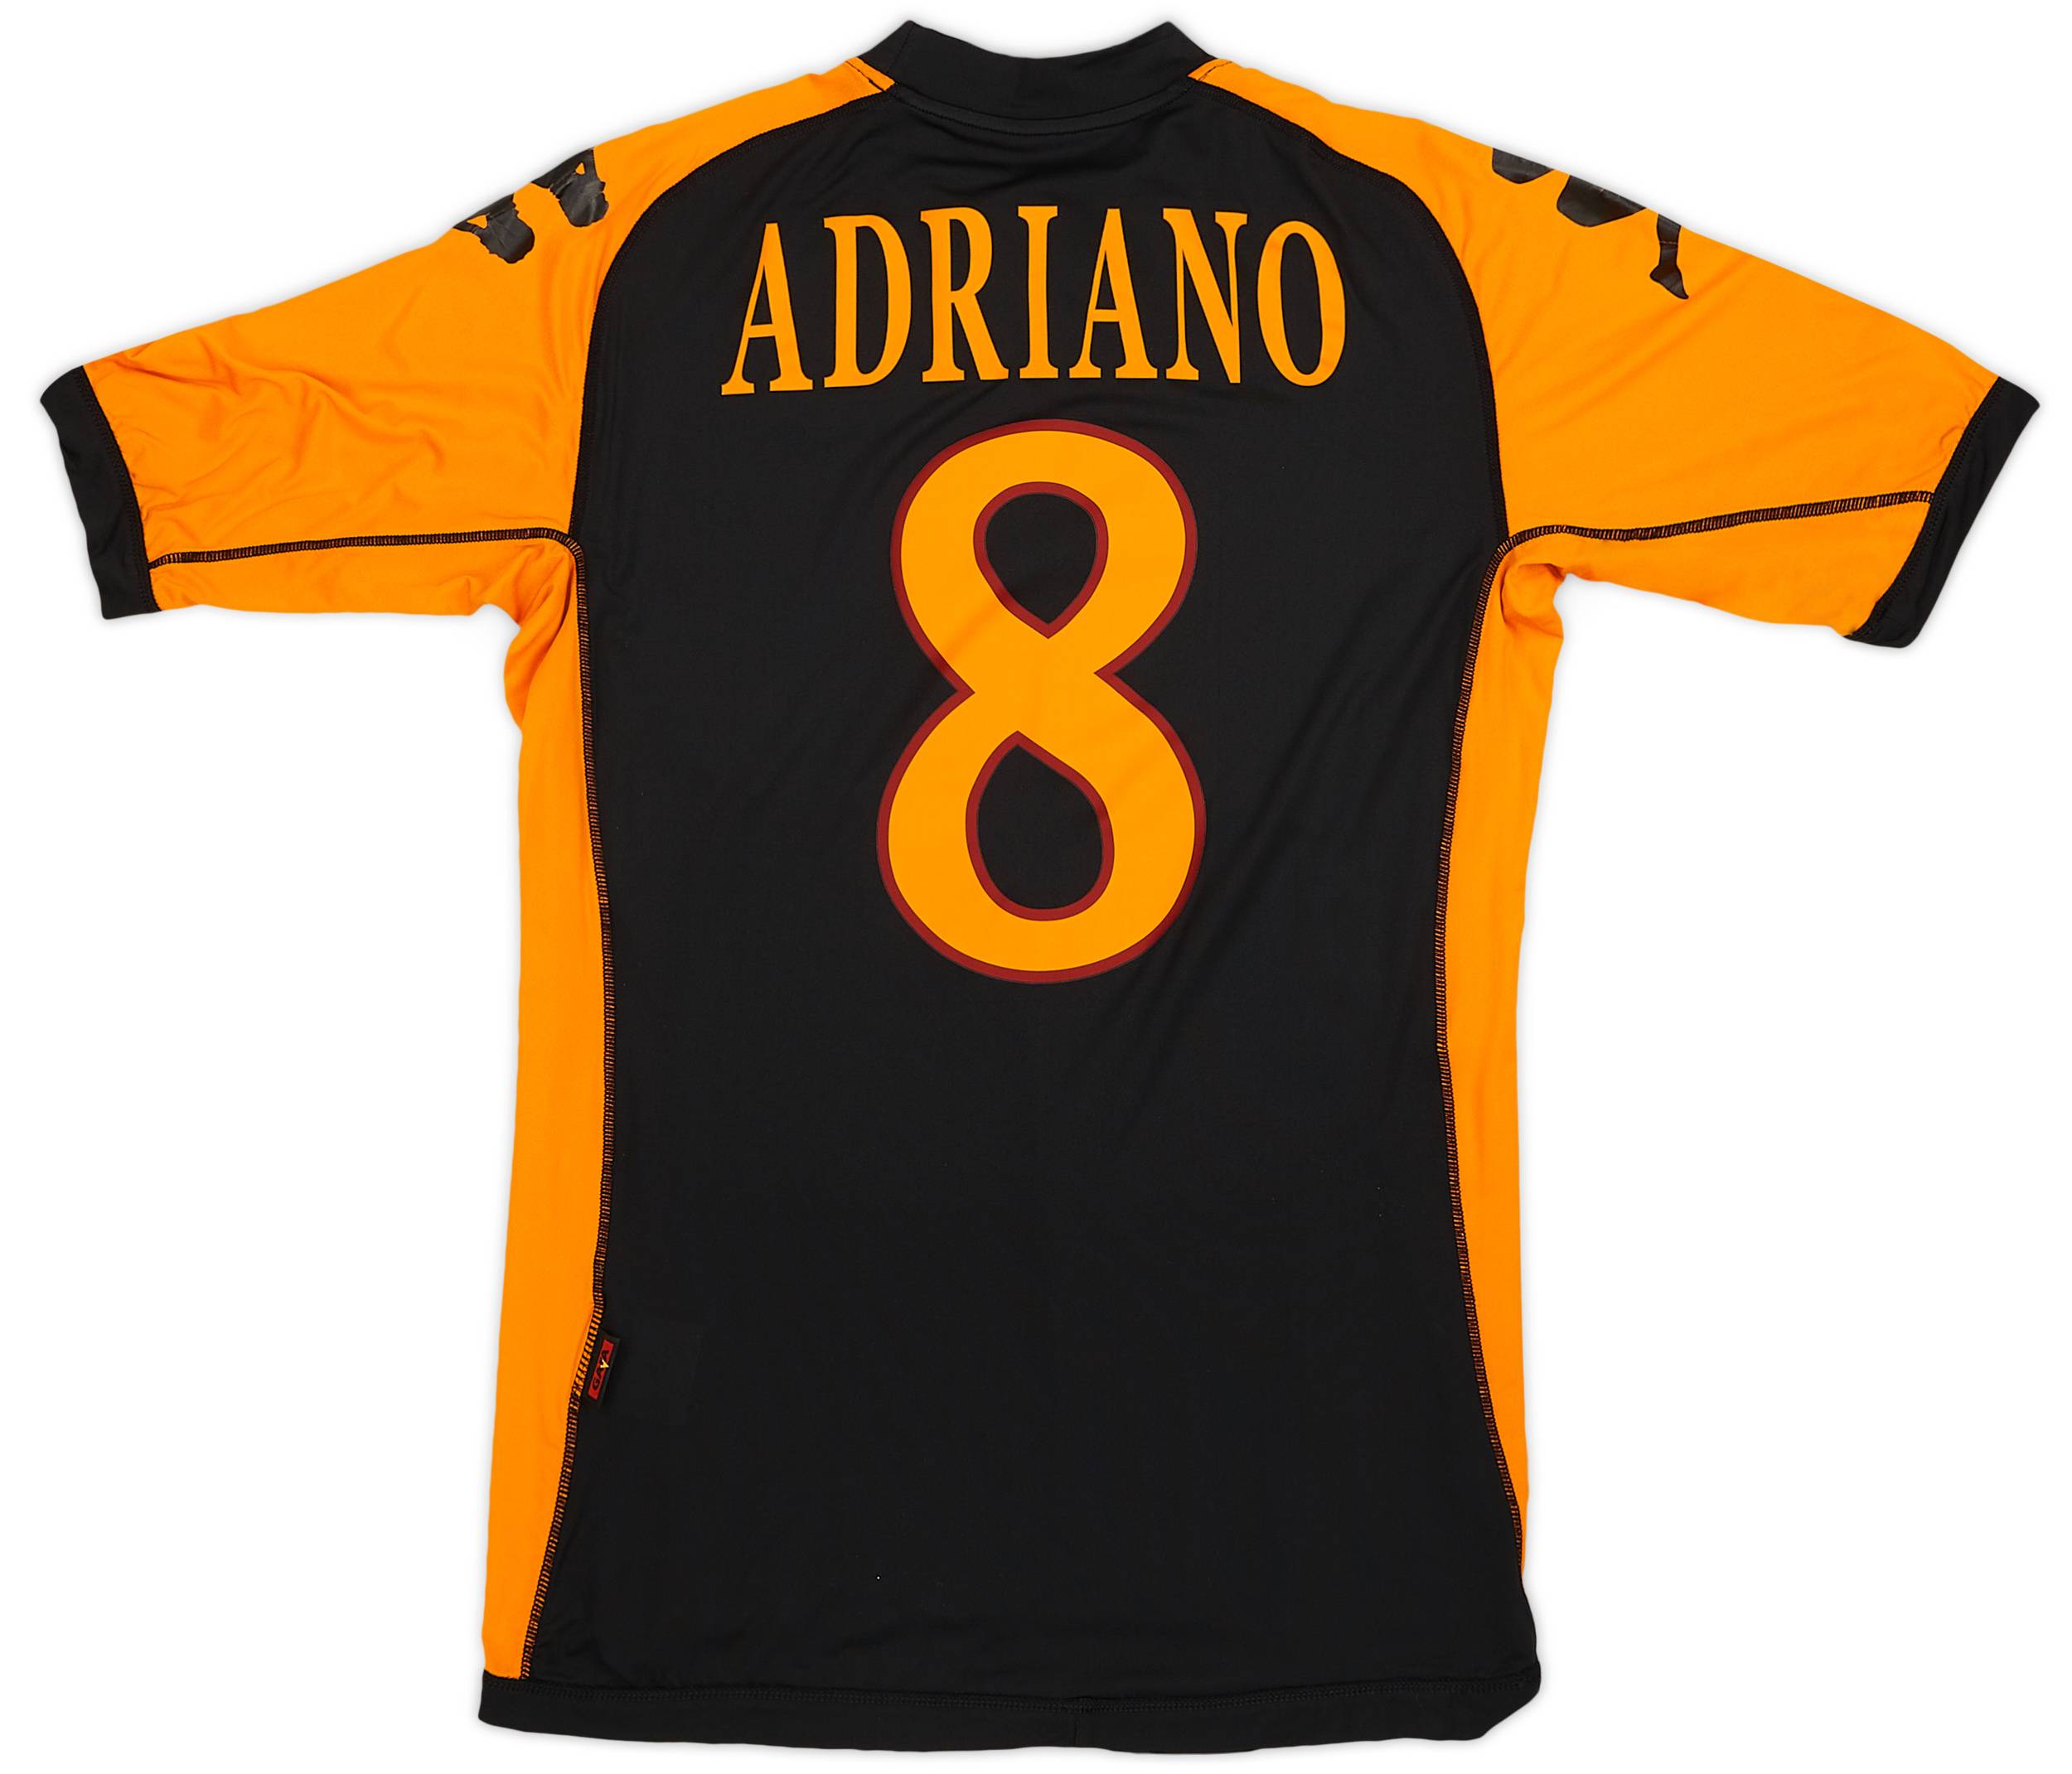 2010-11 Roma Third Shirt Adriano #8 - 7/10 - (M)